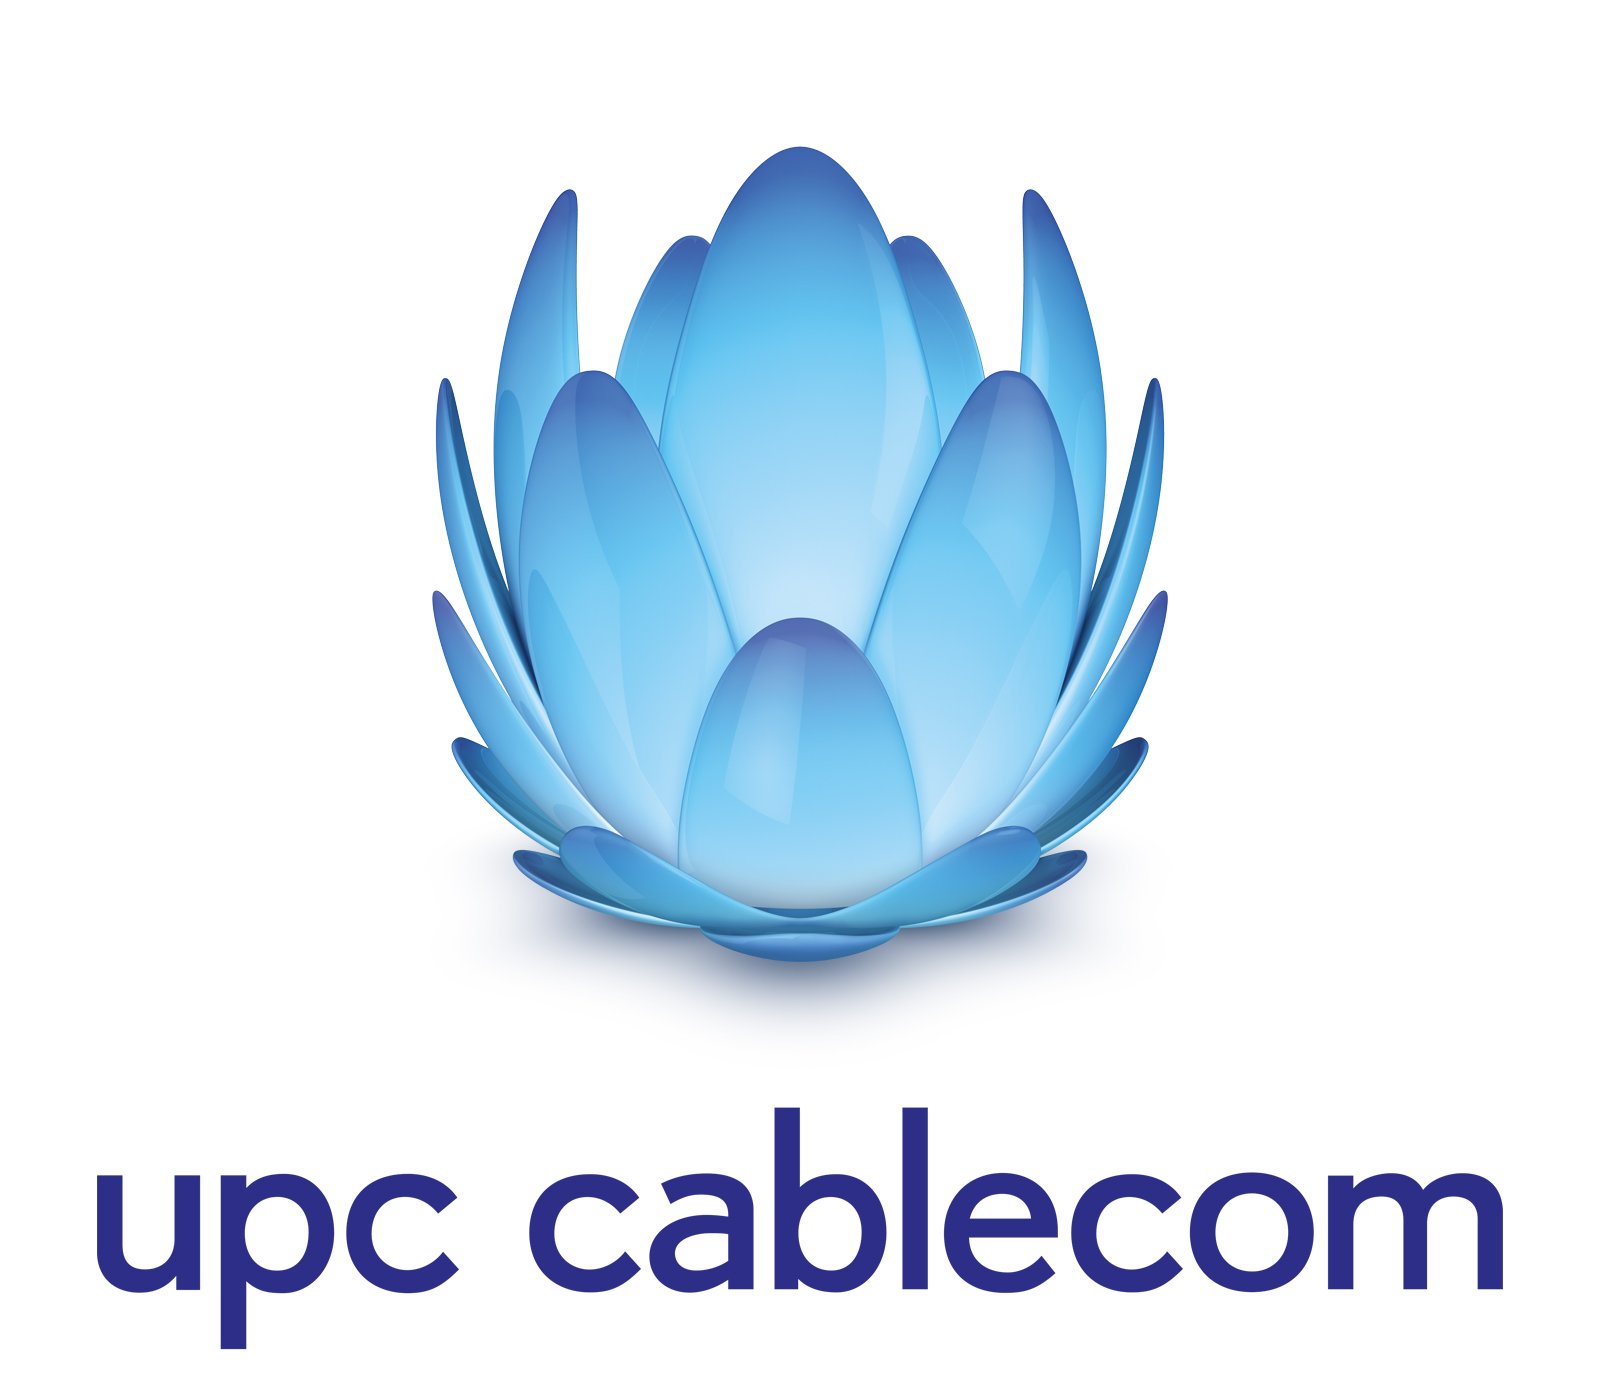 upc-cablecom-logo